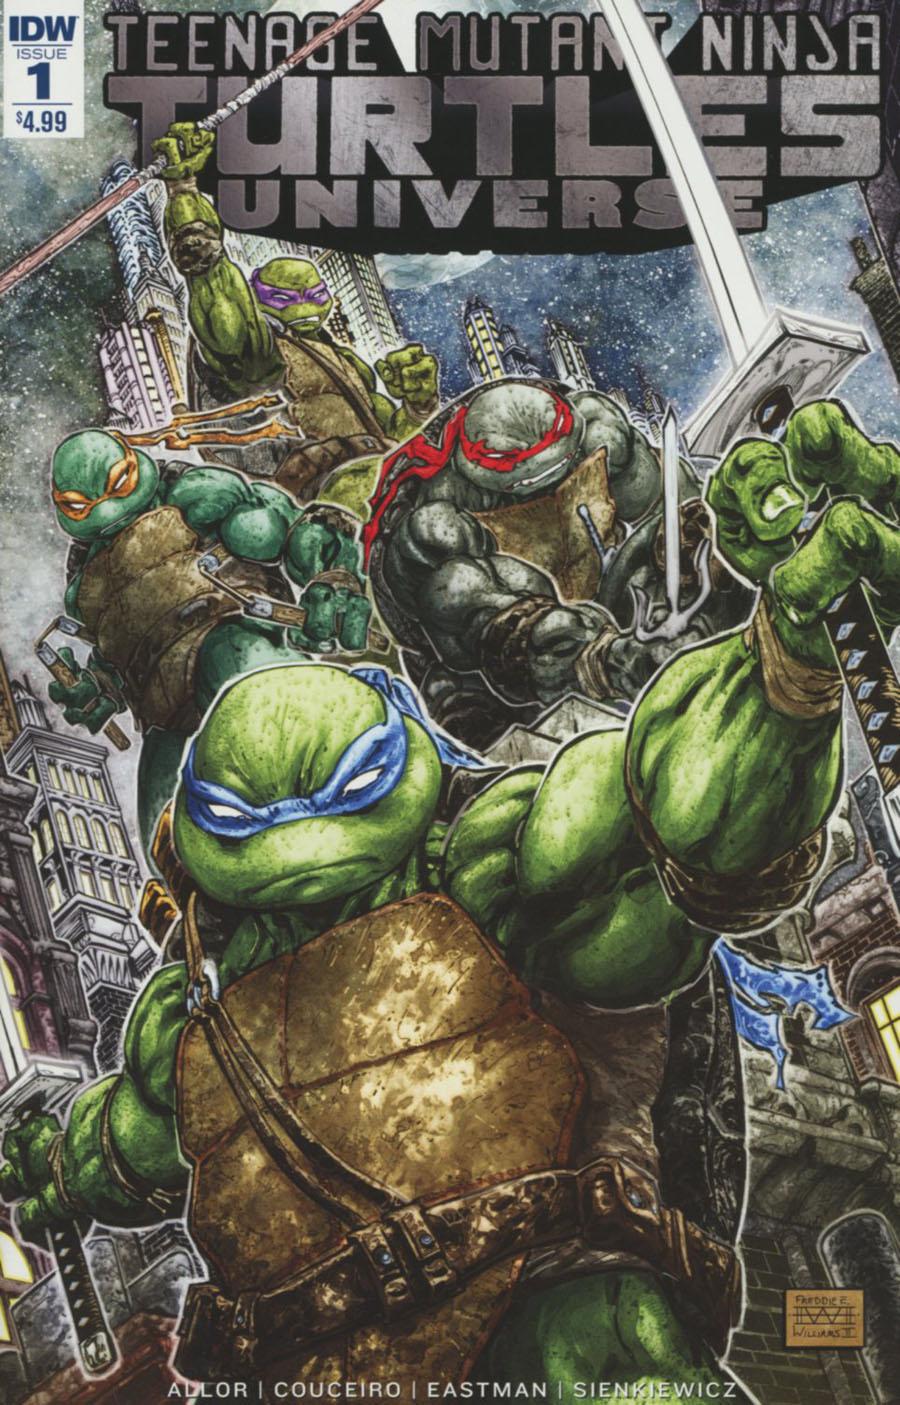 Teenage Mutant Ninja Turtles Universe Vol. 1 #1